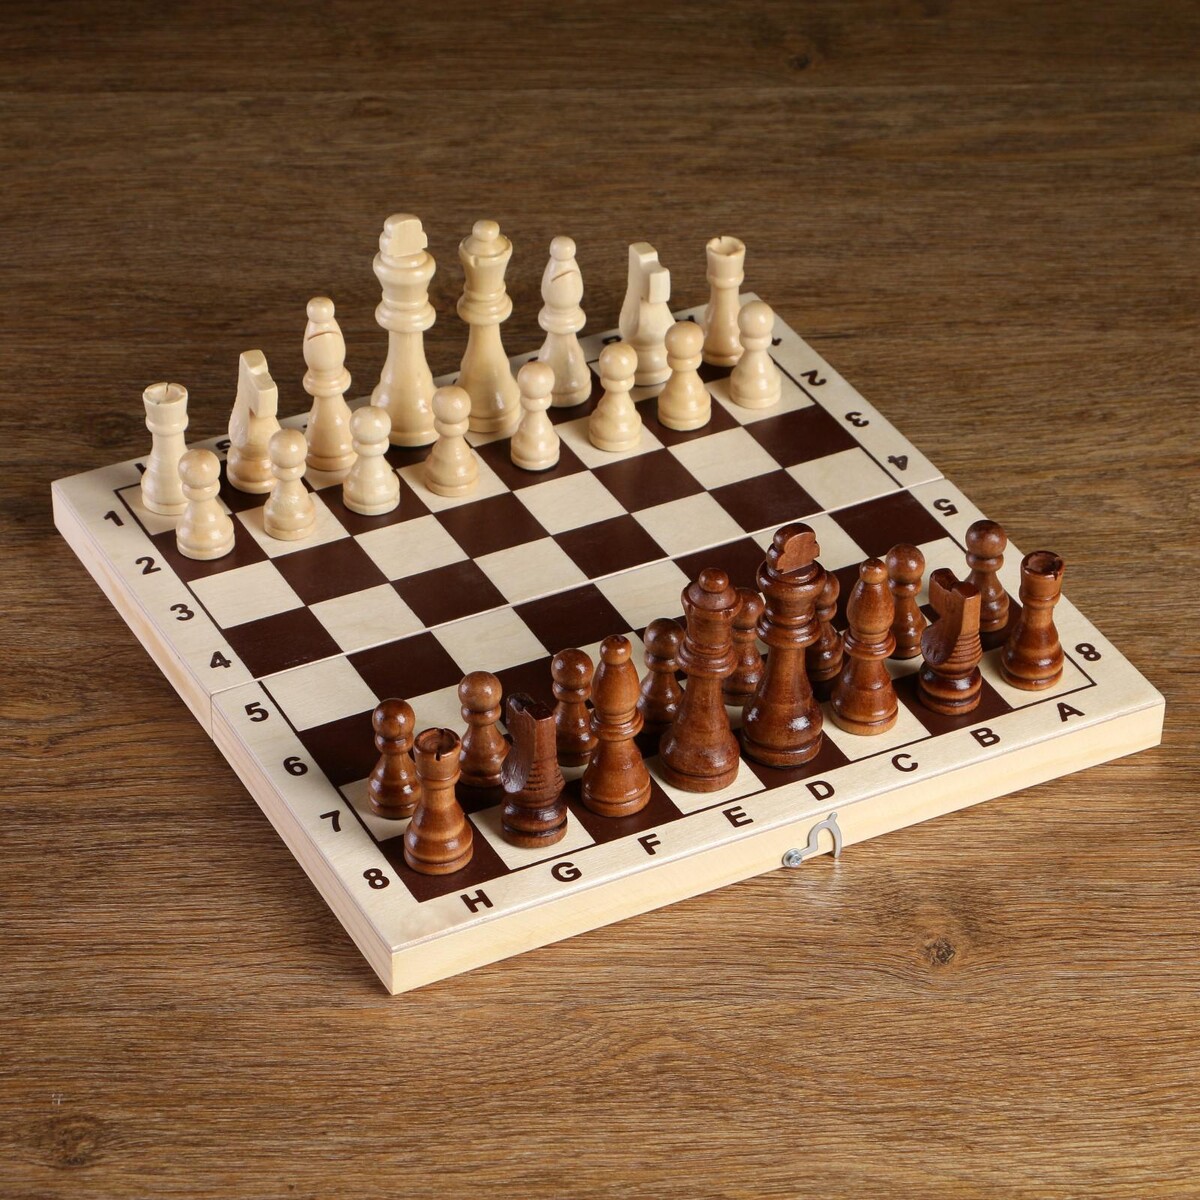 Шахматные фигуры, король h-8 см, пешка h-4 см голый король